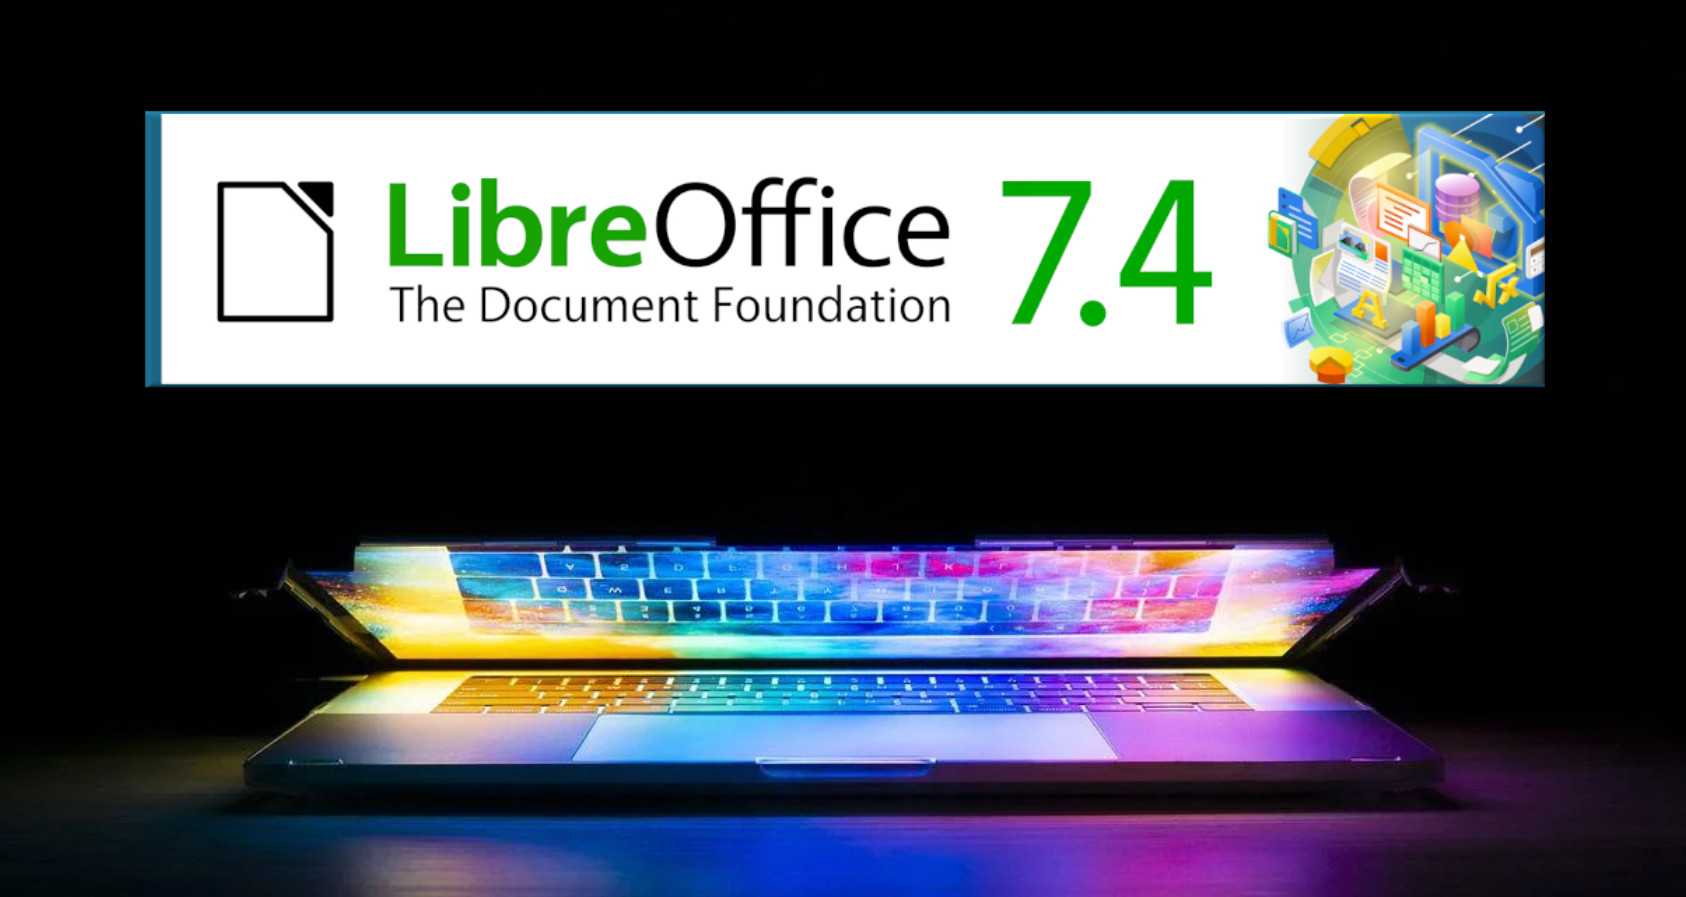 Quer qualidade de graça? O LibreOffice 7.4 traz novos recursos e maior compatibilidade com terceiros